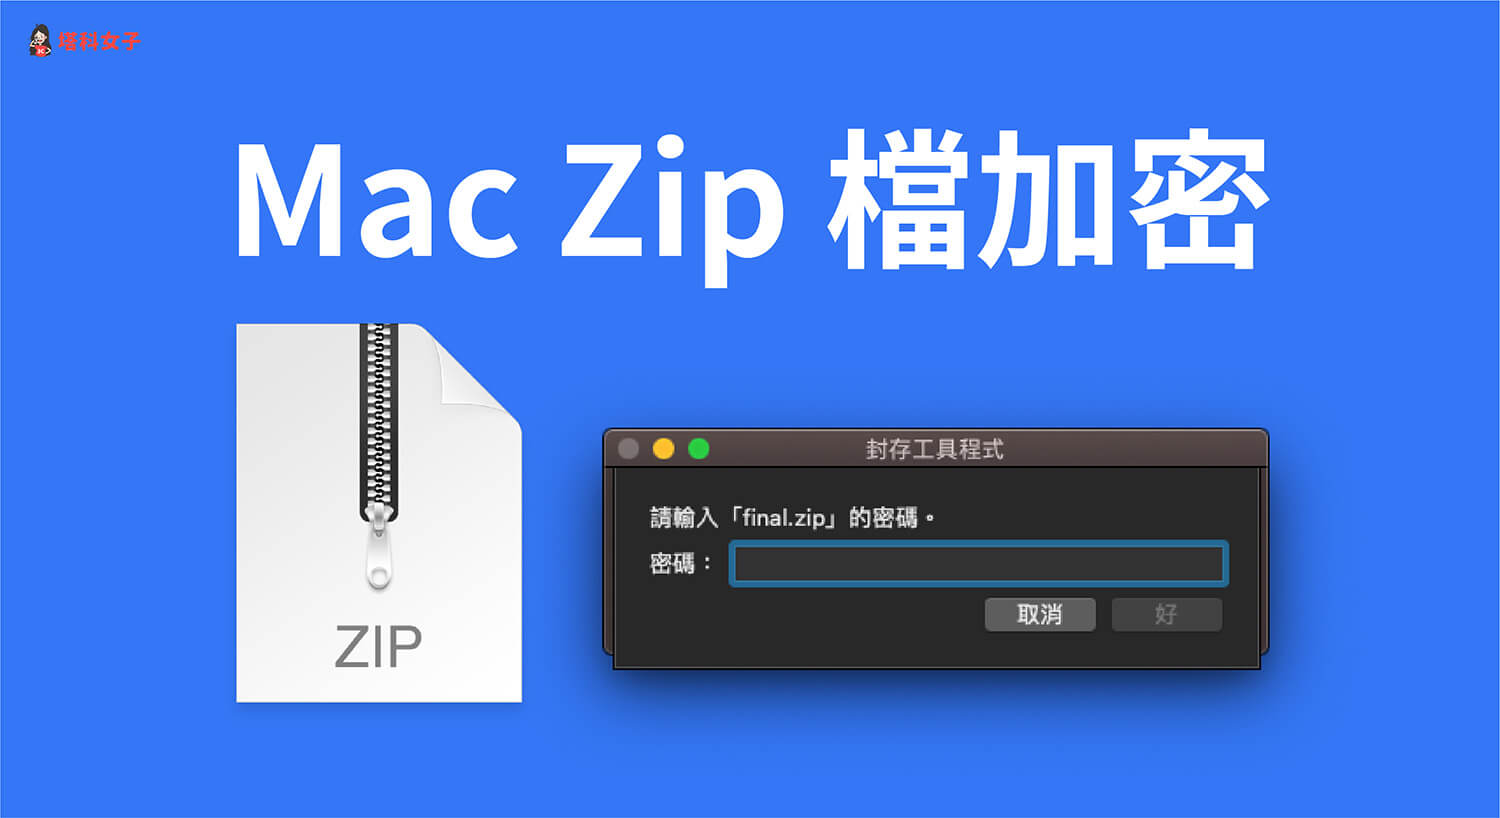 Mac Zip 檔如何加密？教你這方法快速加密碼保護壓縮檔